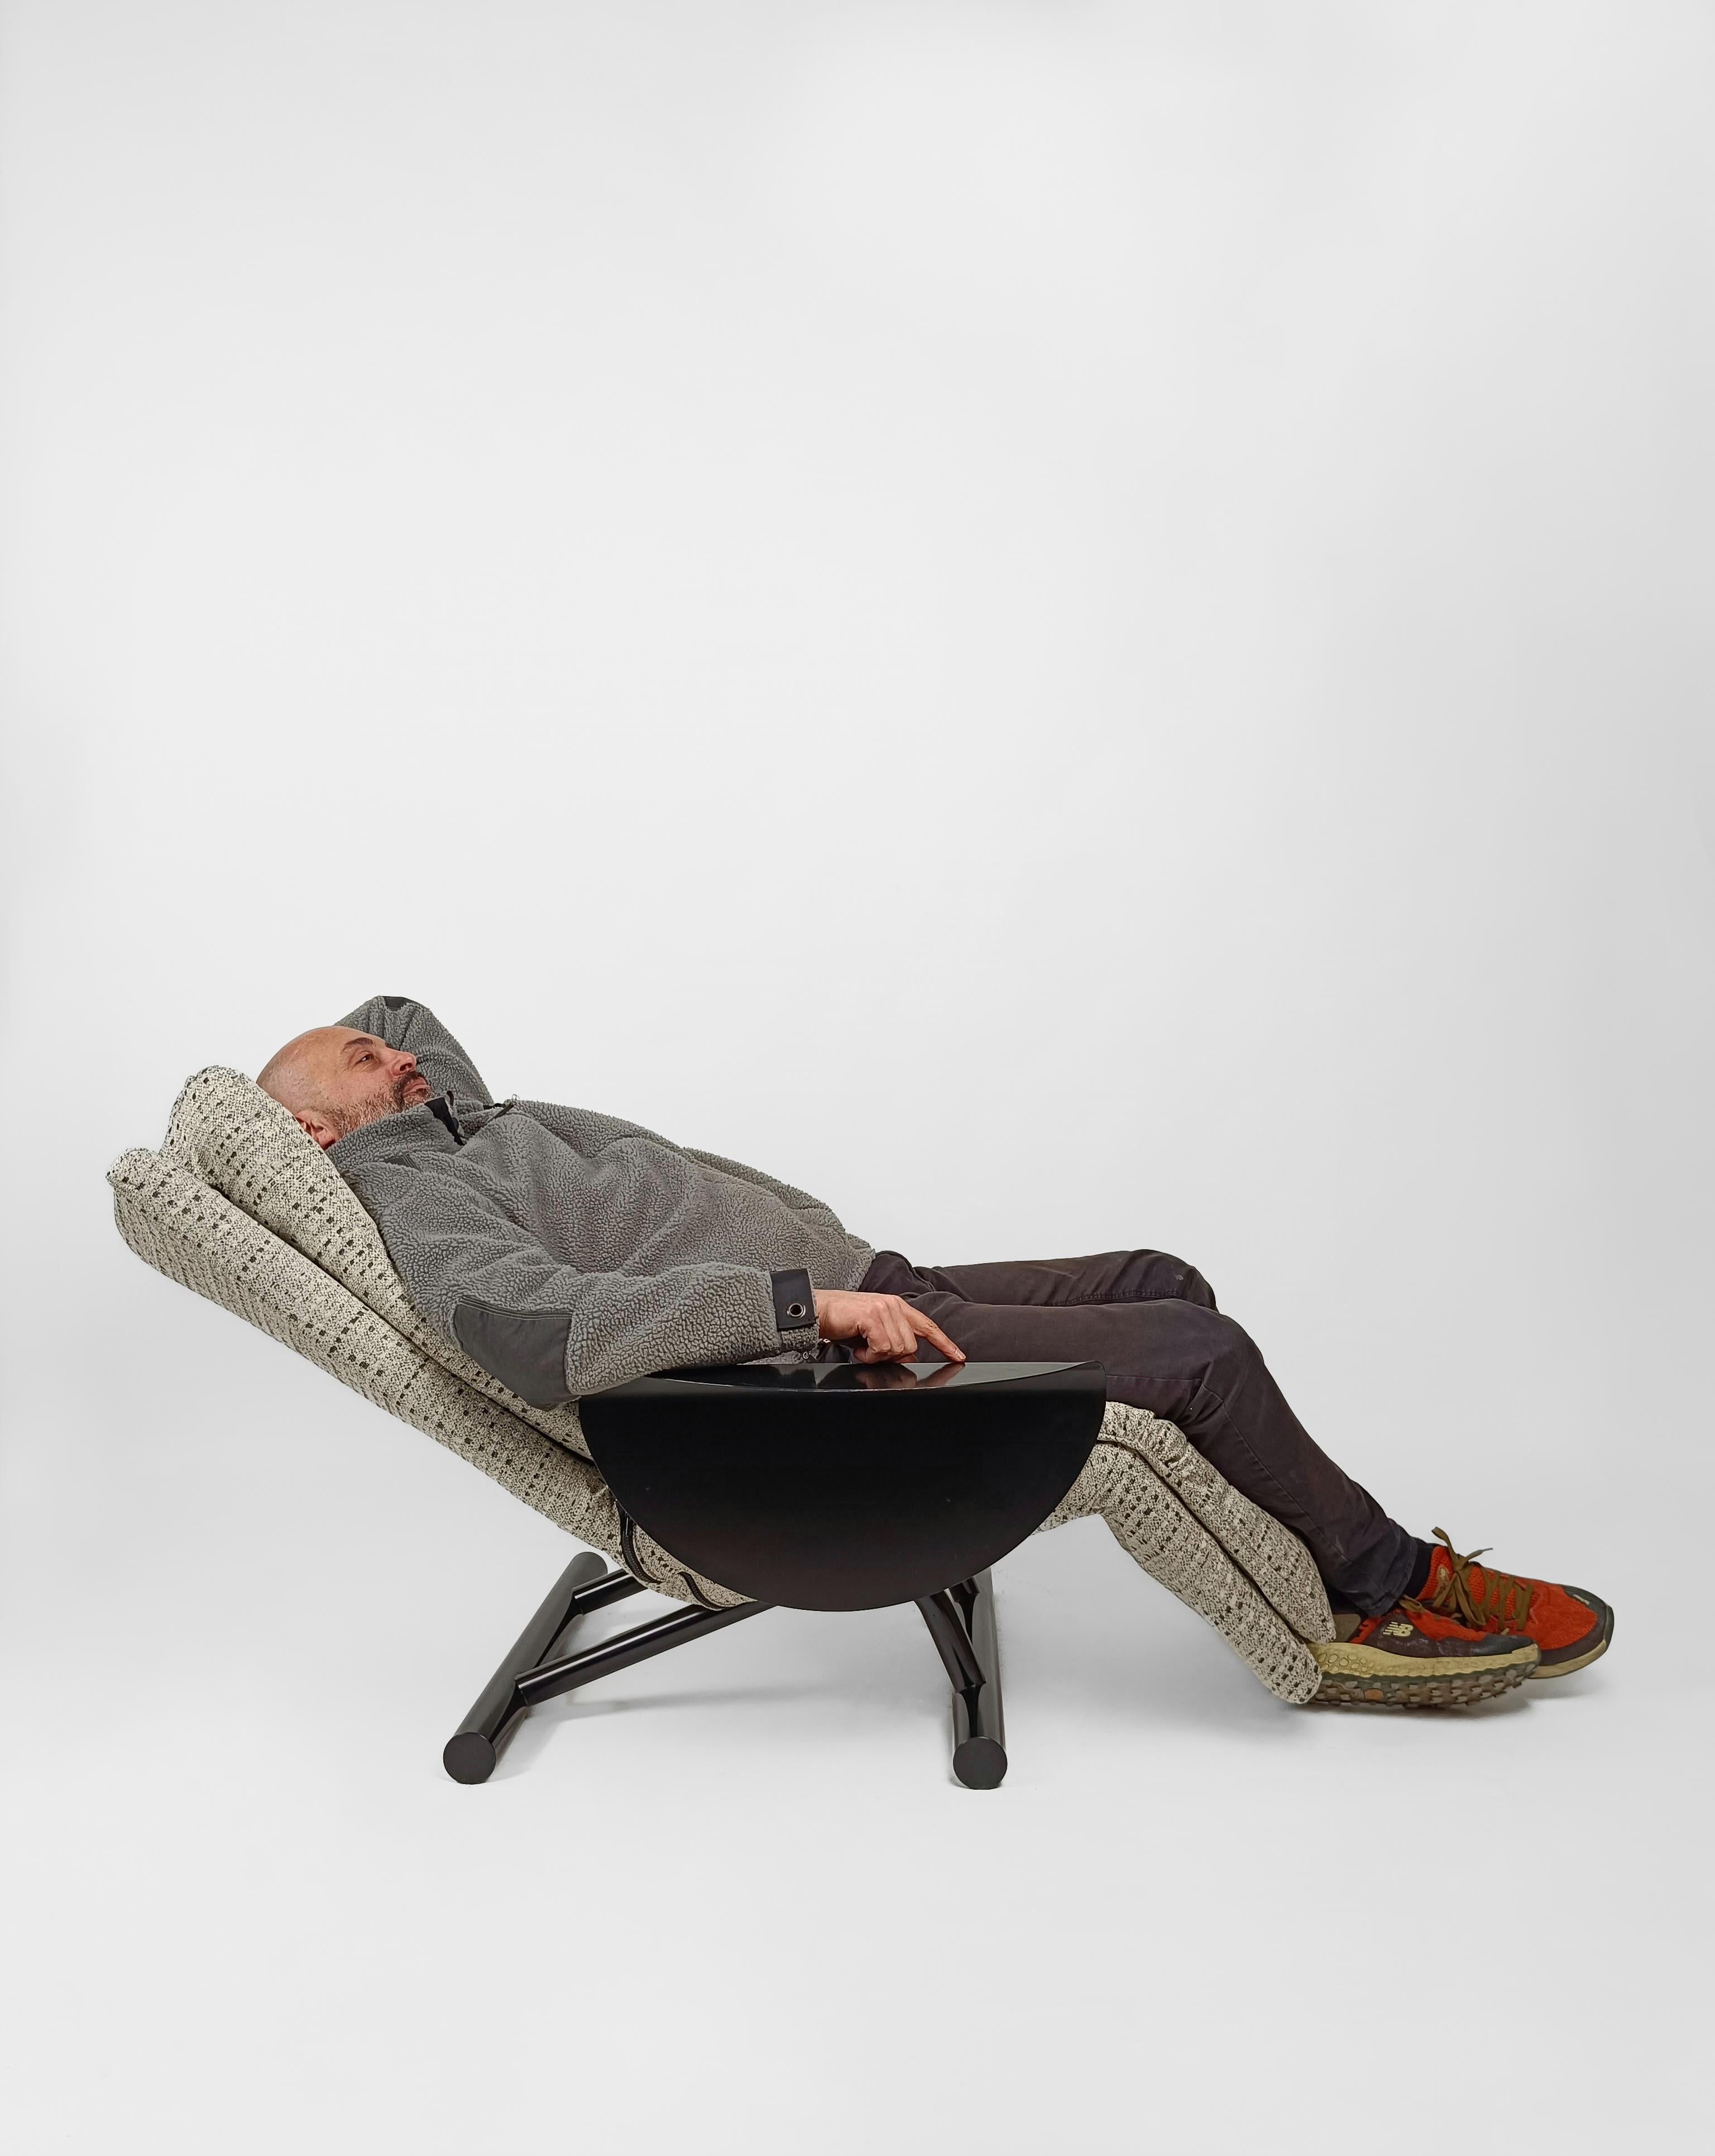 Une chaise de salon post-moderne qui se transforme en une seconde en
chaise longue.

Il suffit de lever l'accoudoir, un disque de métal noir plié avec le même naturel qu'un origami, de décider de l'inclinaison de la chaise longue et de l'abaisser